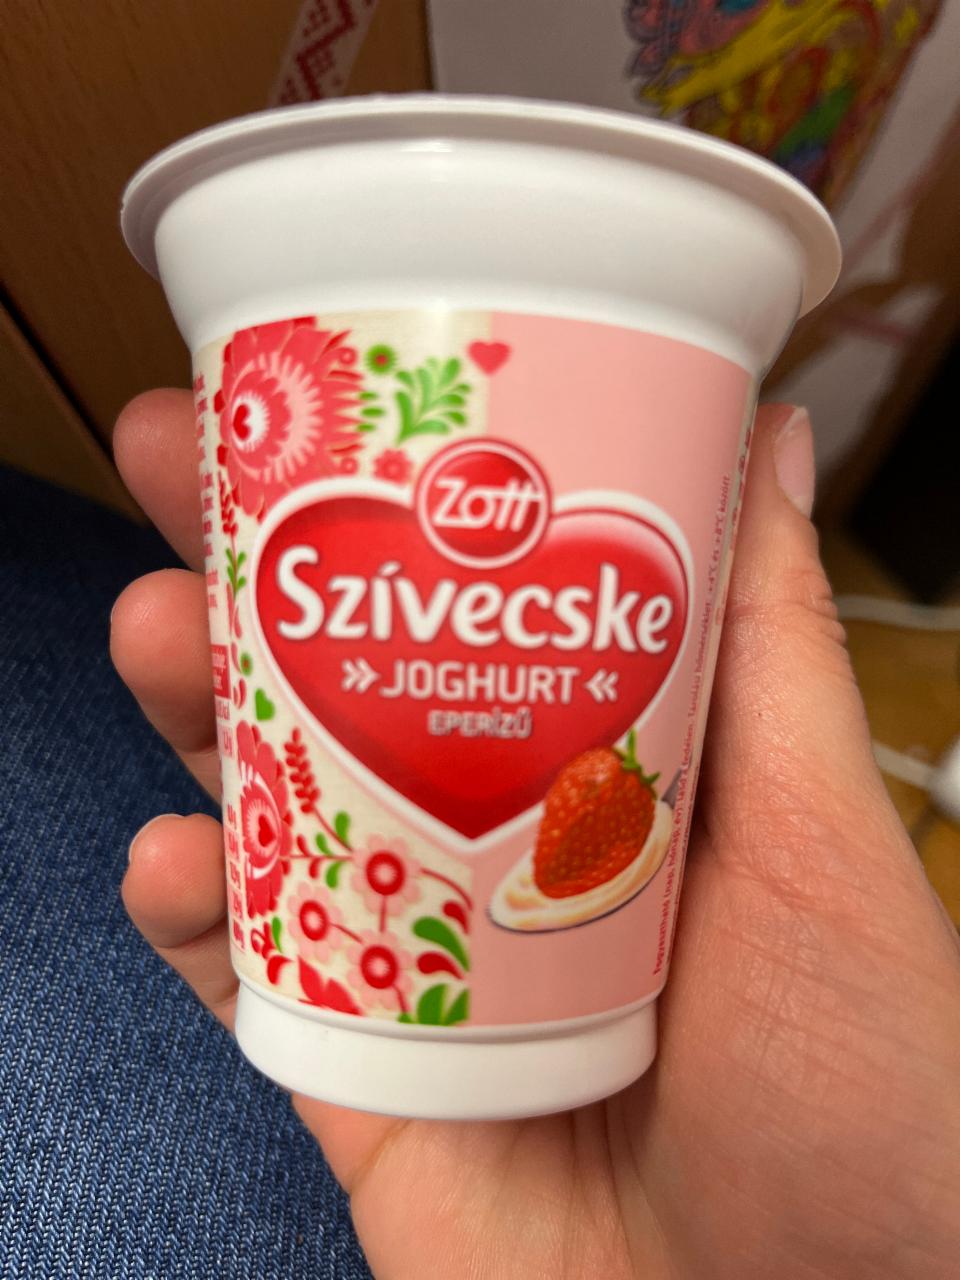 Képek - Sivecske joghurt eperízů Zott